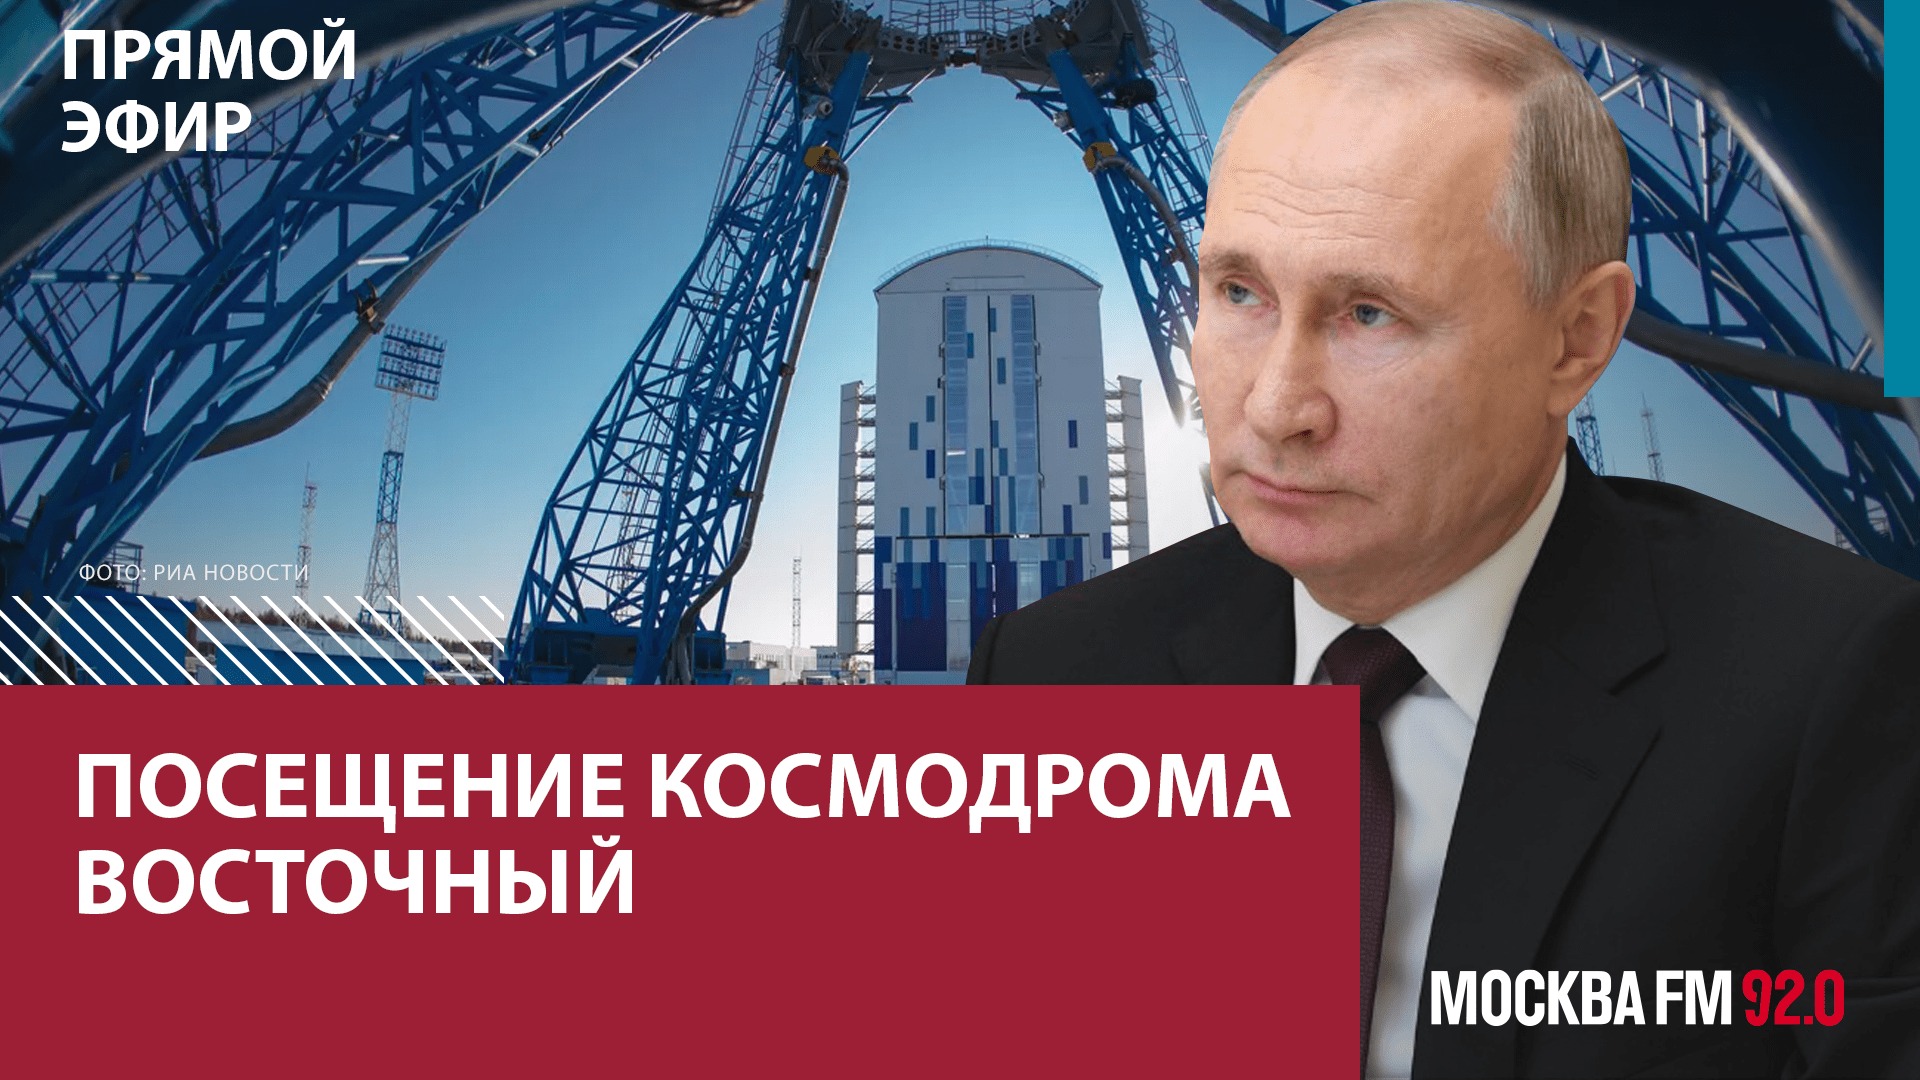 Владимир Путин посещает космодром Восточный - Москва FM